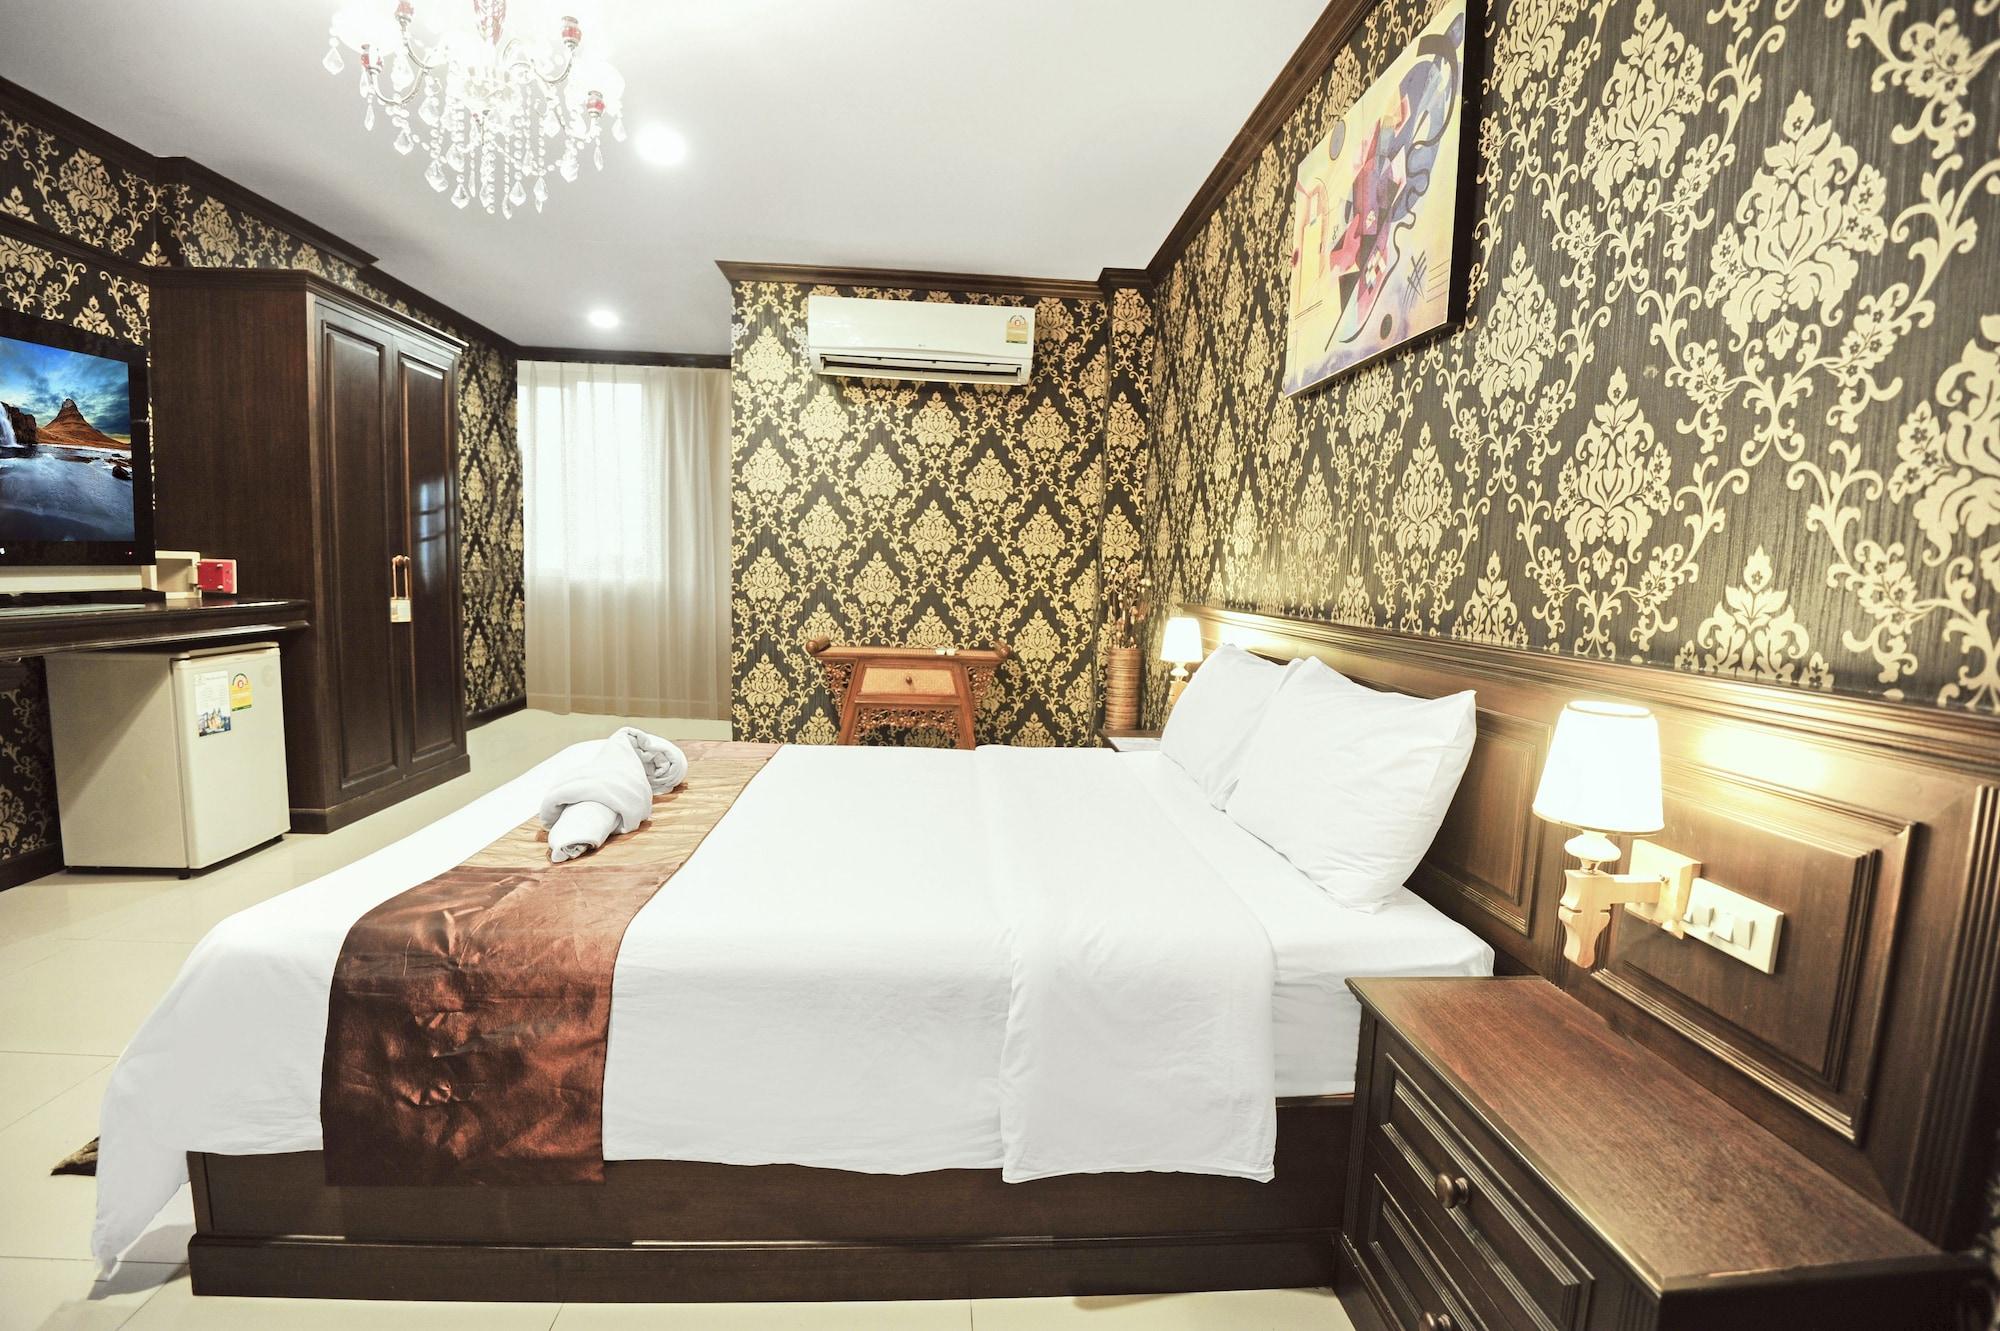 Romena Grand Hotel Чиангмай Экстерьер фото